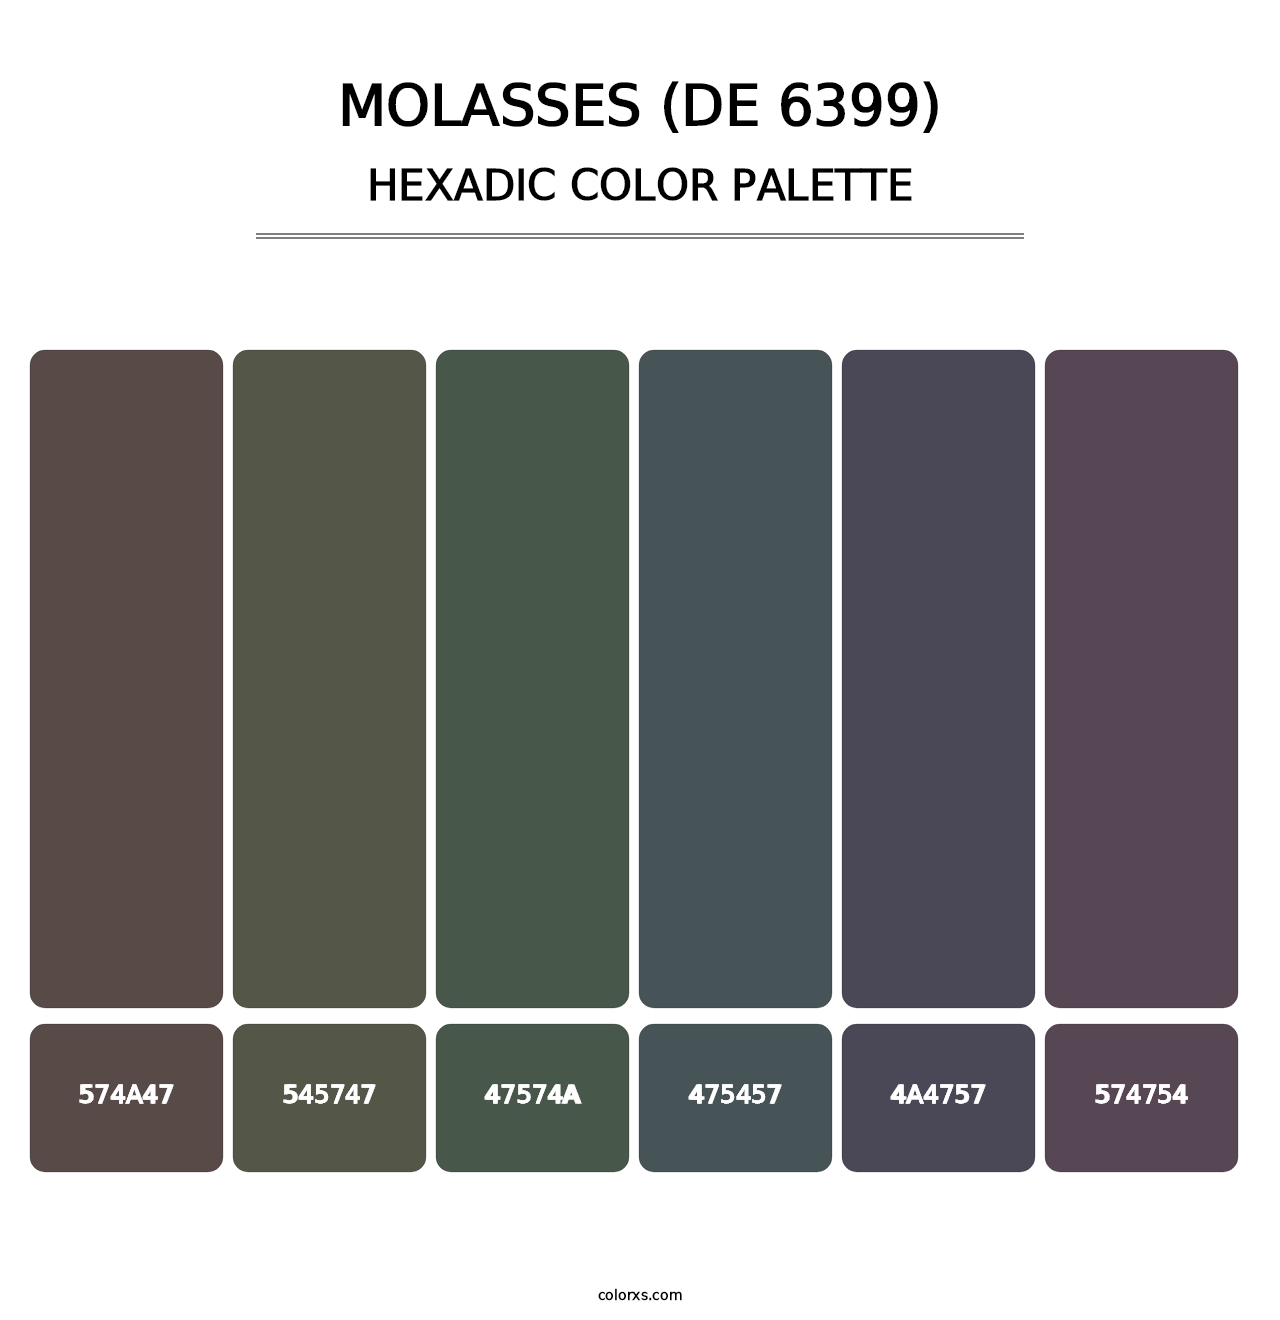 Molasses (DE 6399) - Hexadic Color Palette